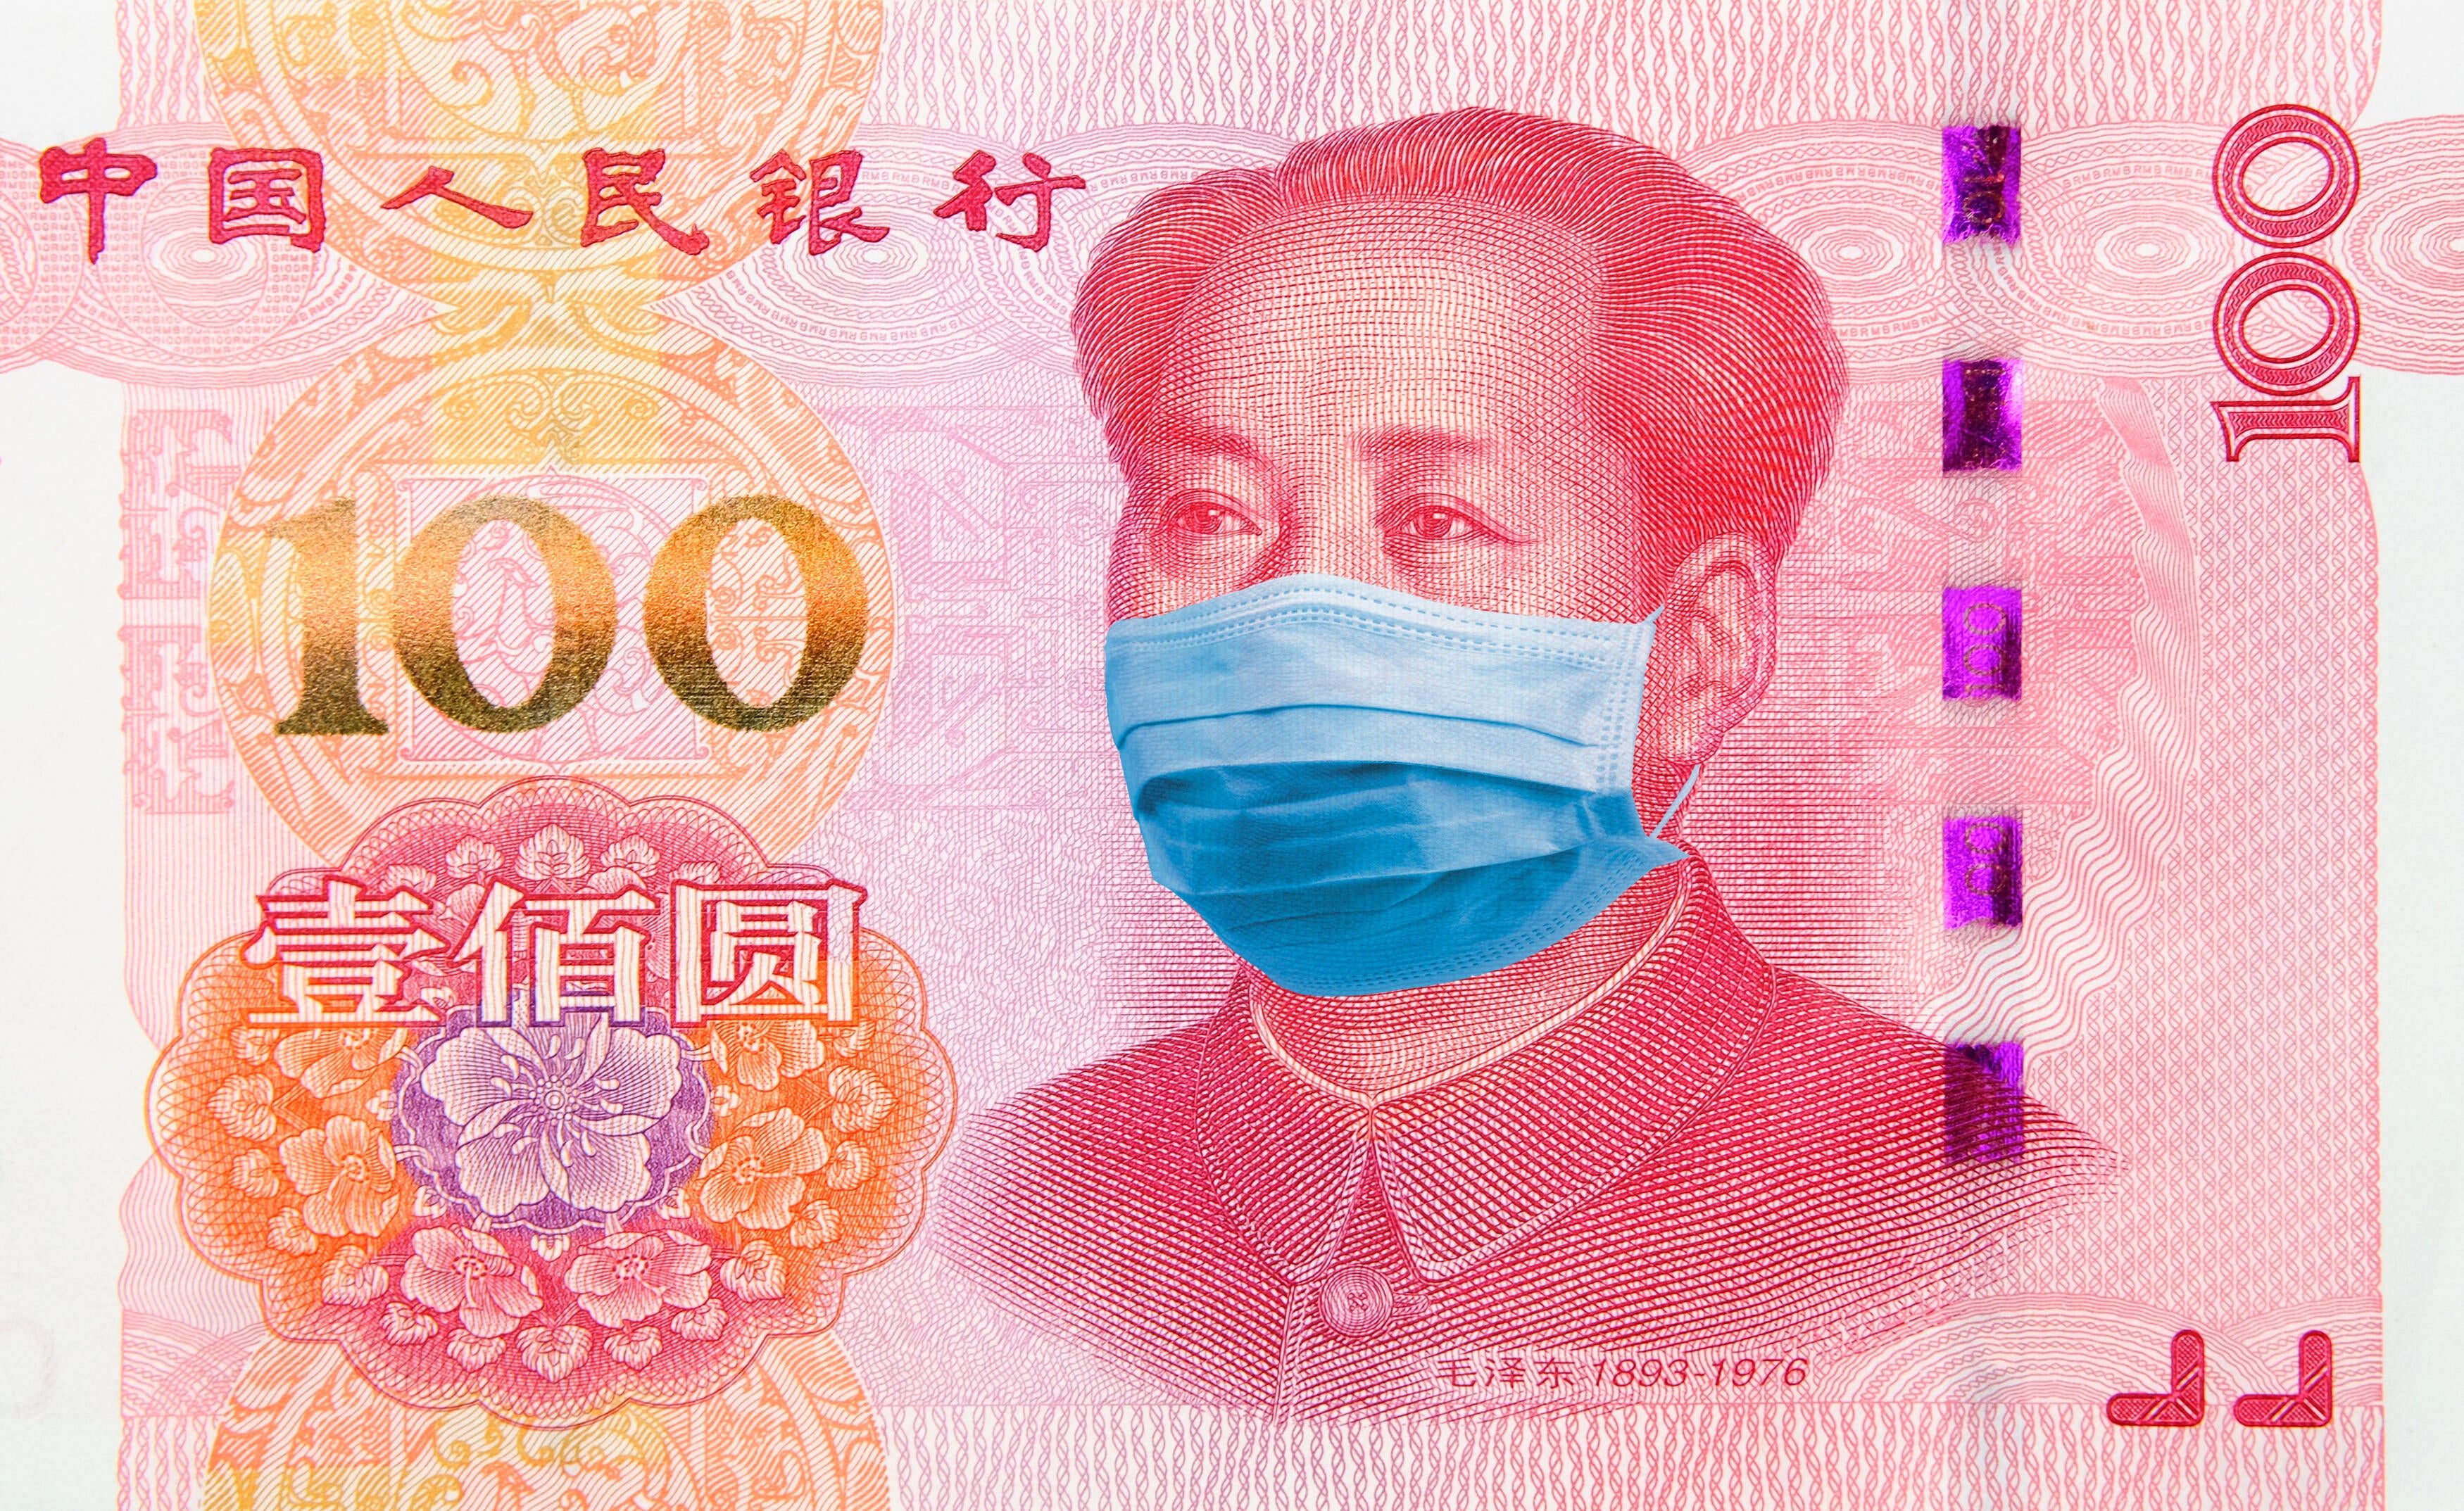 Đại dịch virus corona COVID-19: Trung Quốc thu hồi và cách ly tiền giấy để khử trùng, Bitcoin vẫn chẳng “hề hấn” gì